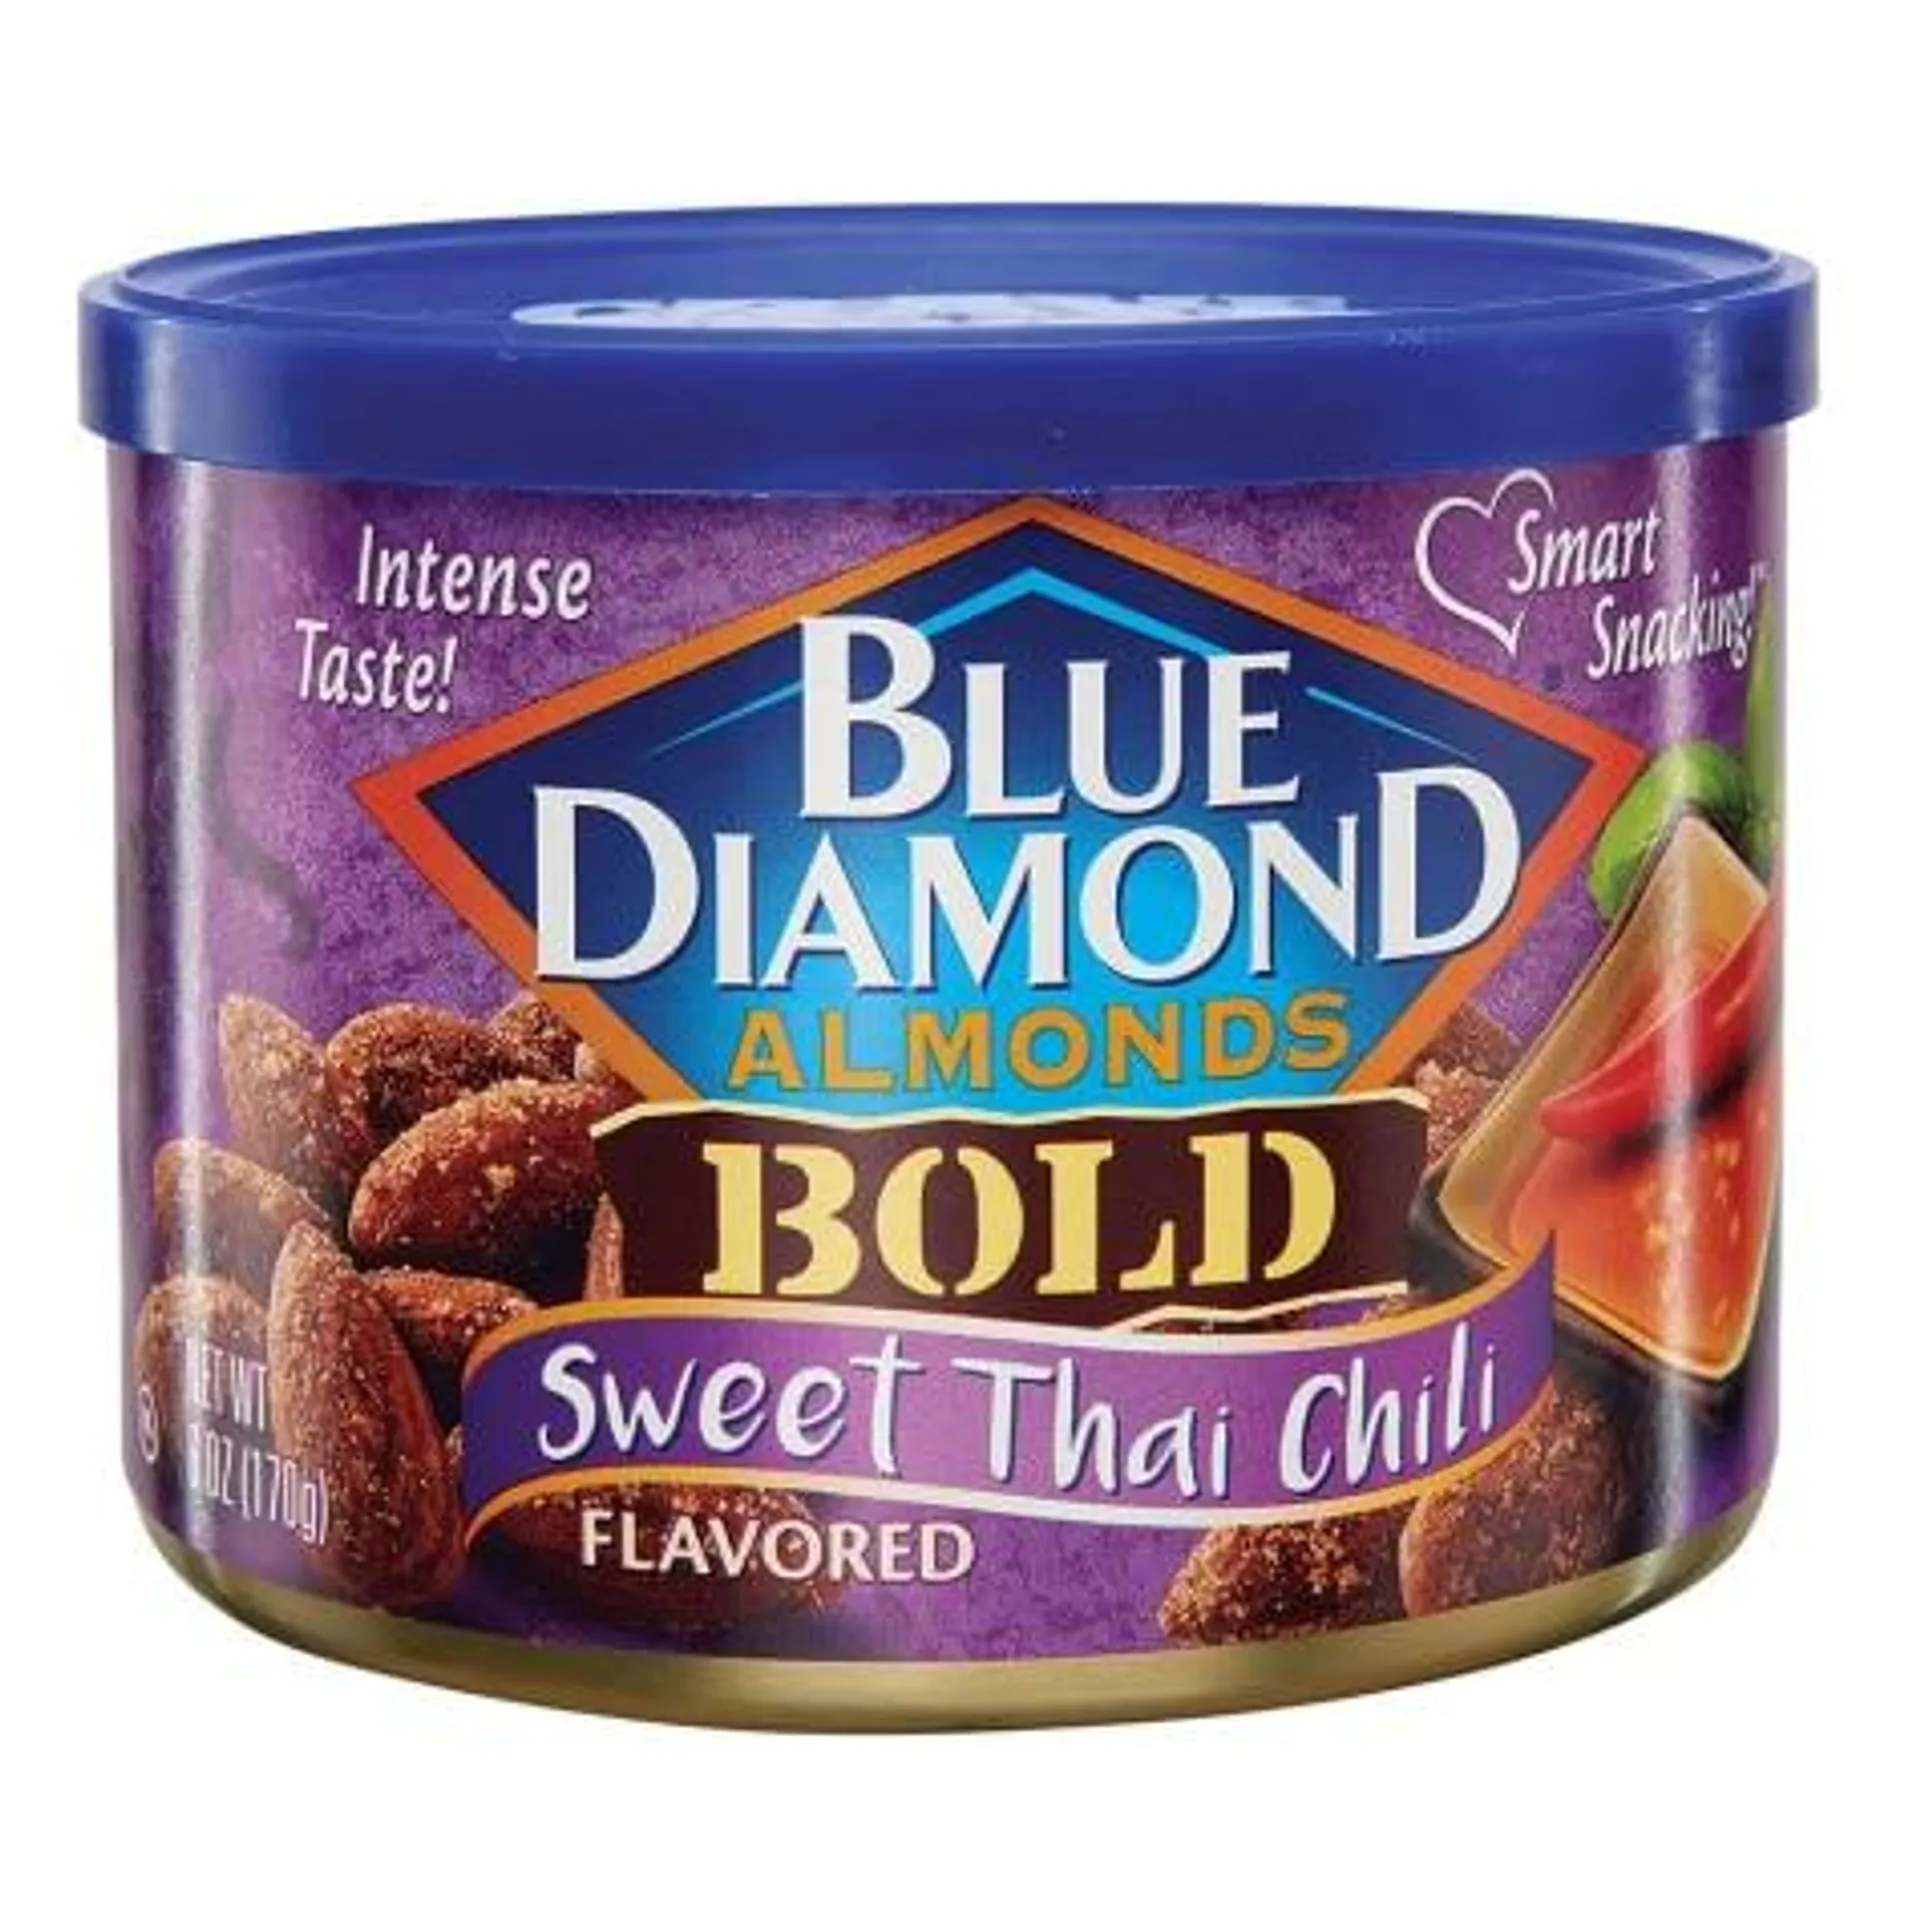 Blue Diamond Bold Sweet Thai Chili Almonds, 6 oz